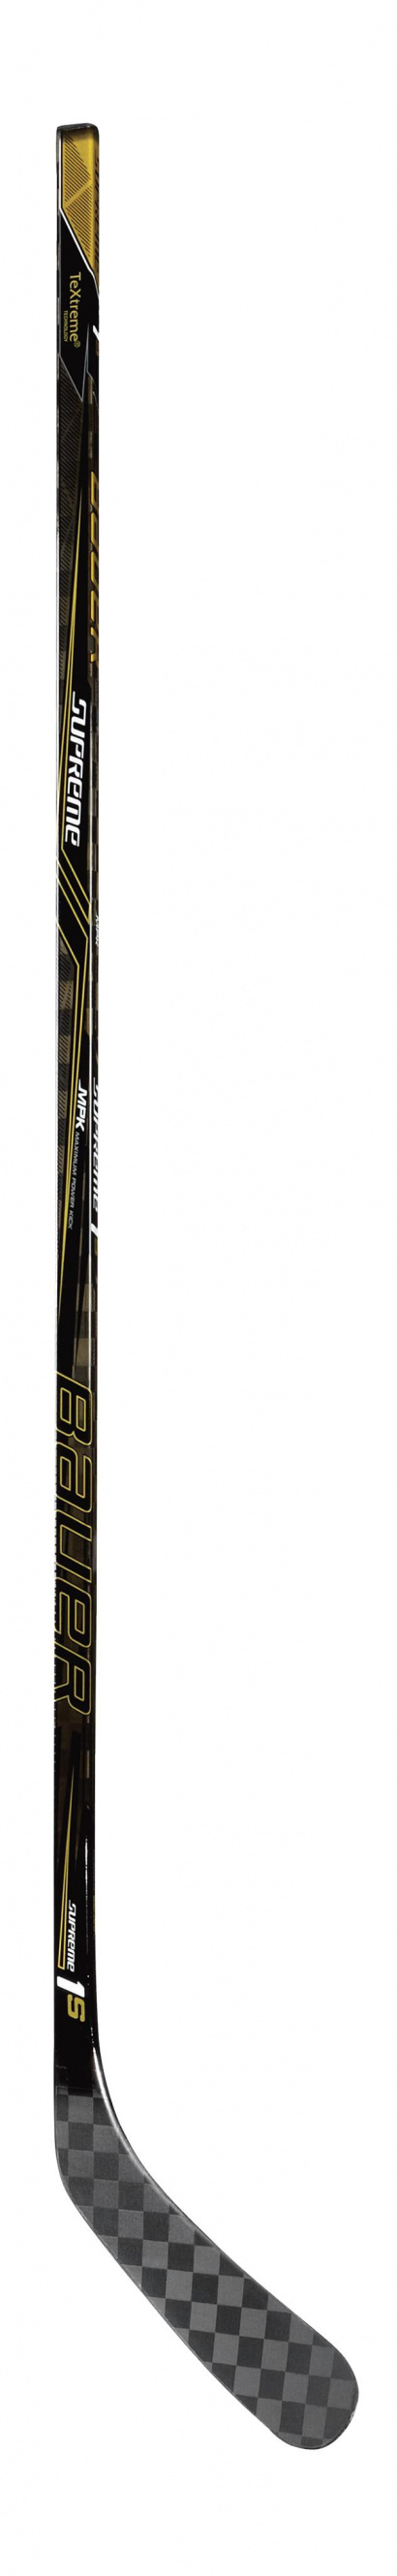 Hockey Stick Bauer SUPREME 1S Grip Sr / Senior 77